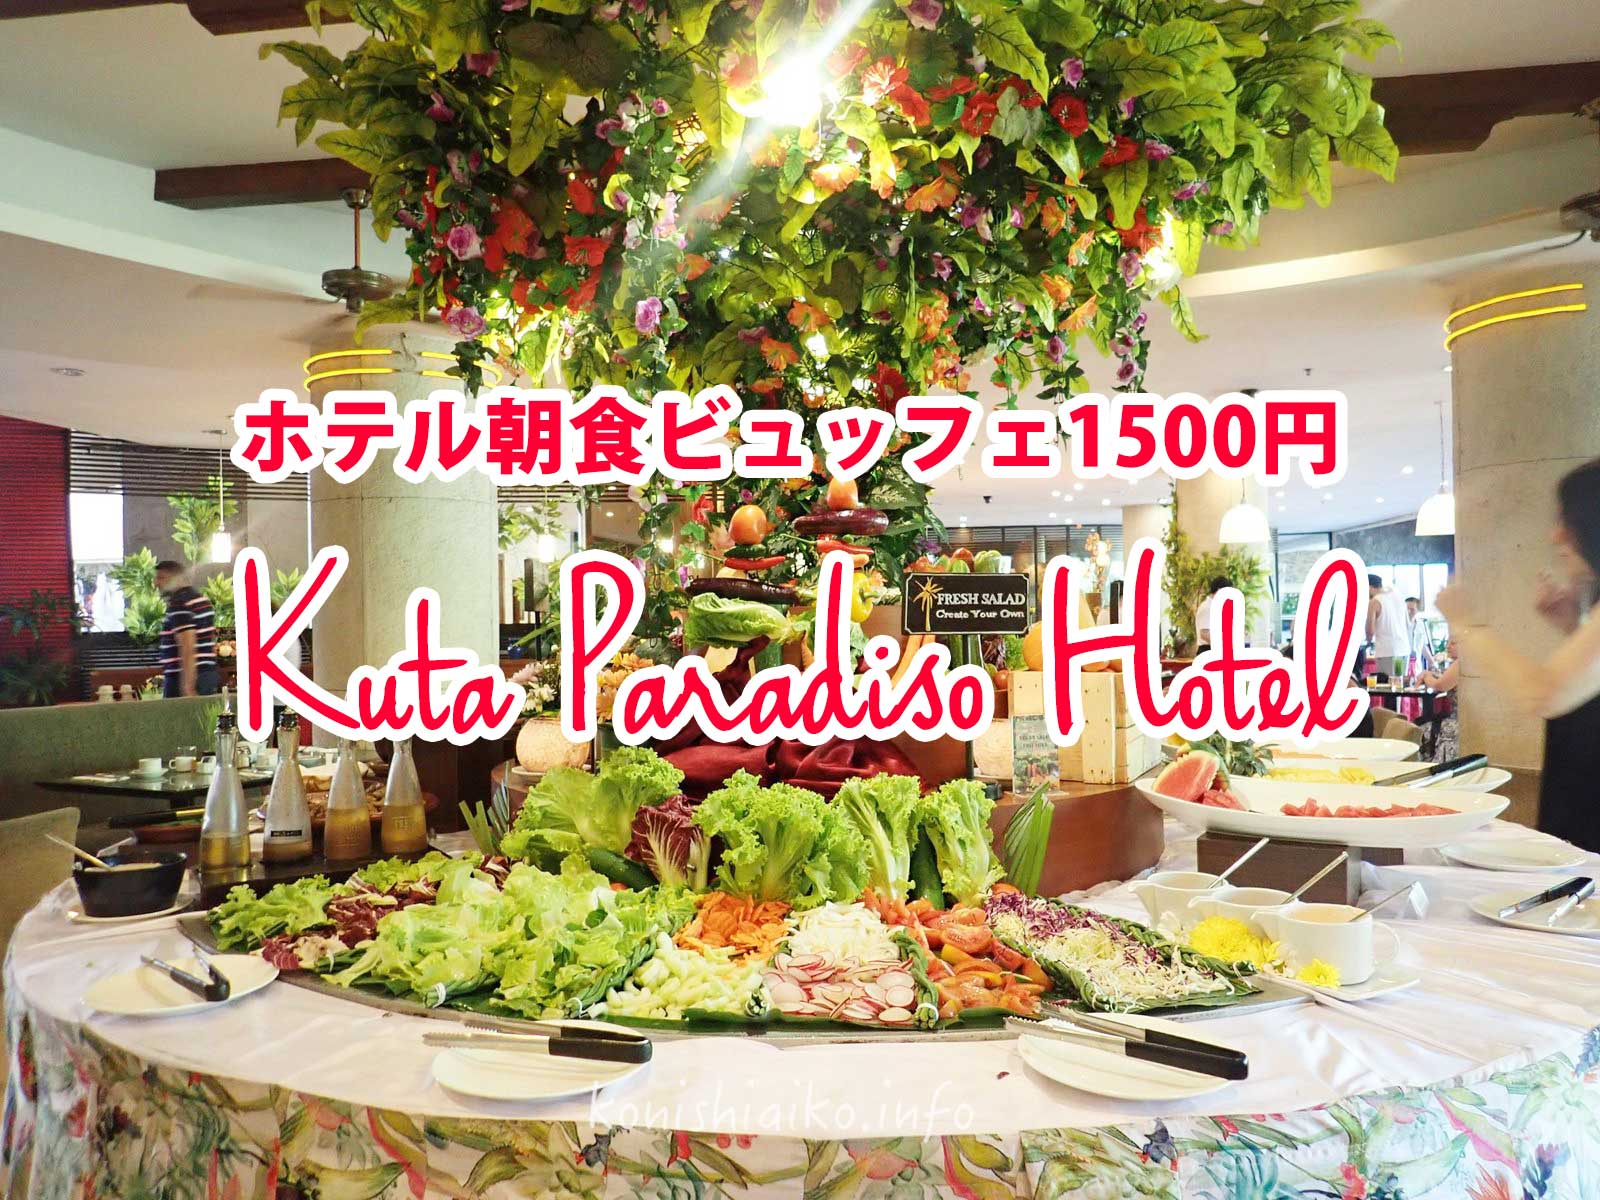 バリ島クタパラディソホテルの朝食ビュッフェ1500円がなかなかやるよ Buffet Breakfast At Kuta Paradiso Hotel Webマーケティングと旅とアート